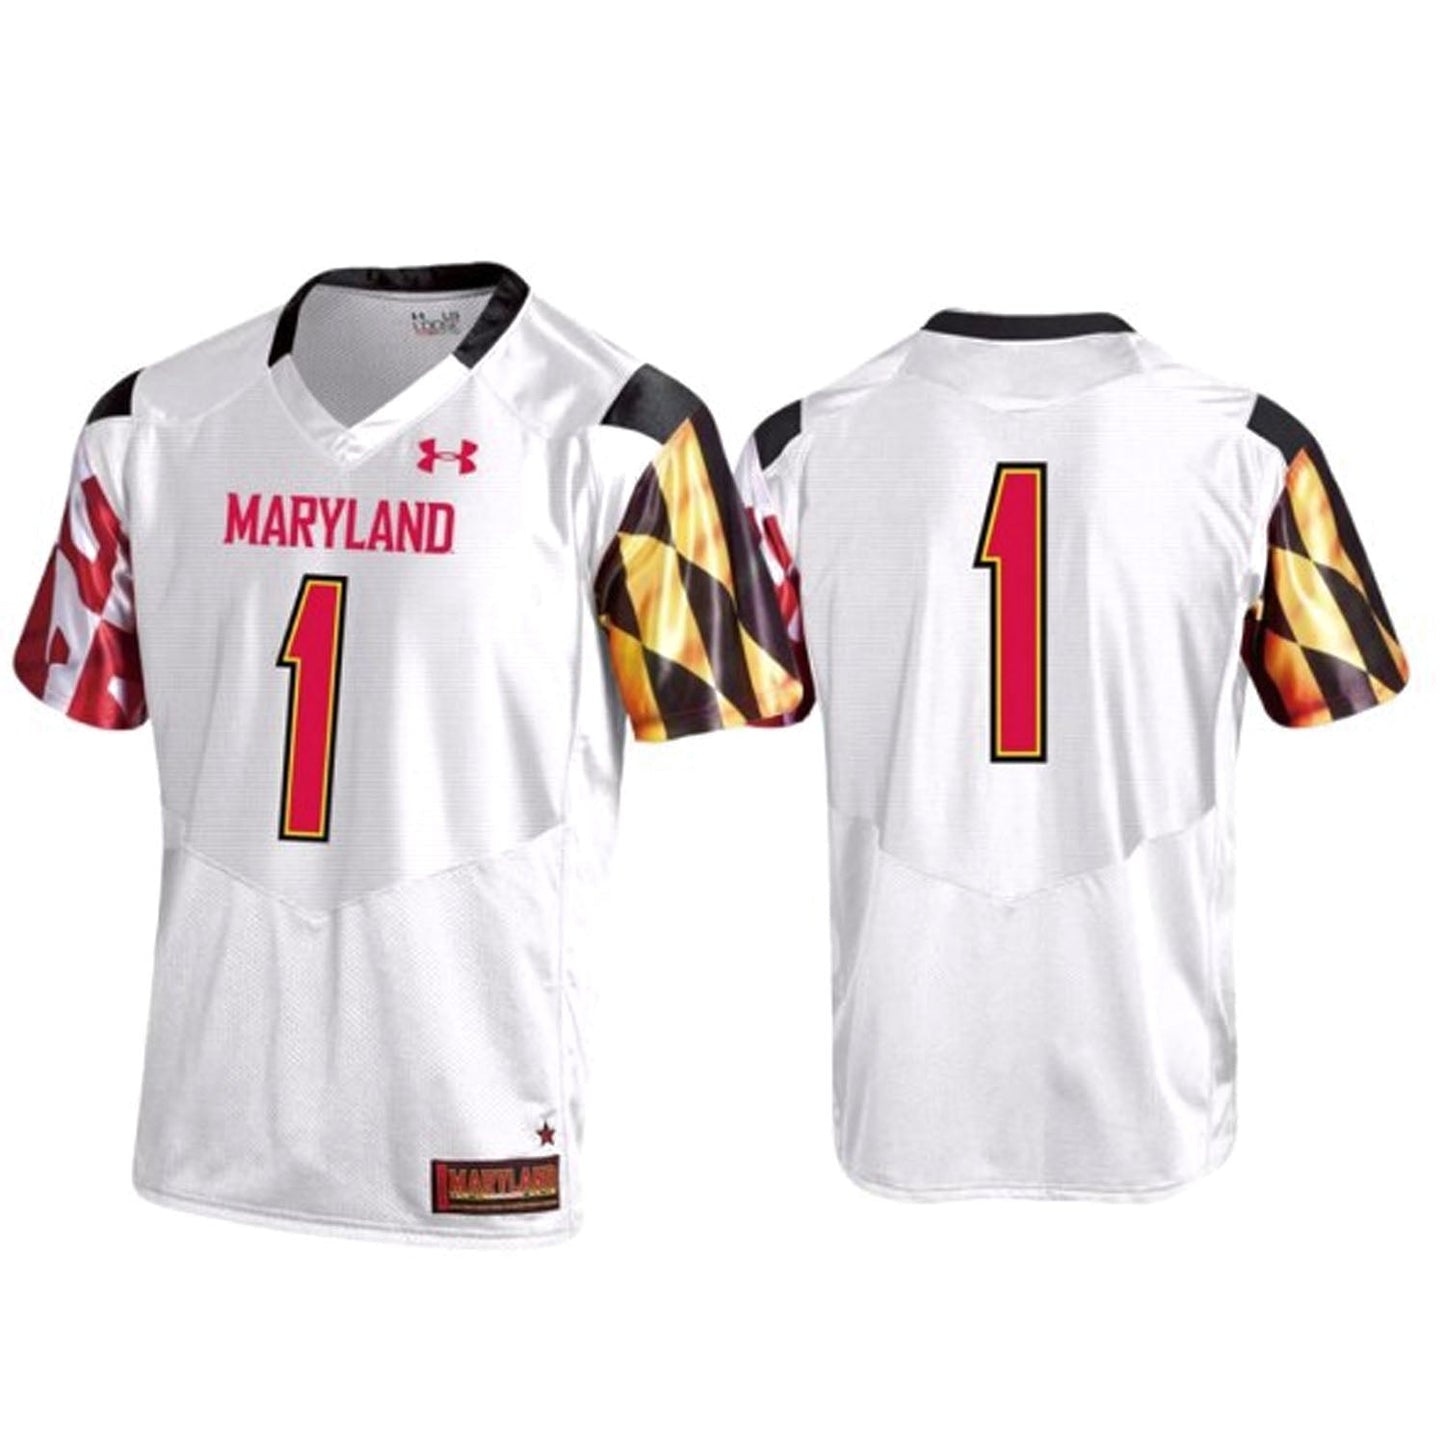 NCAAF Maryland Terrapins Custom Jersey